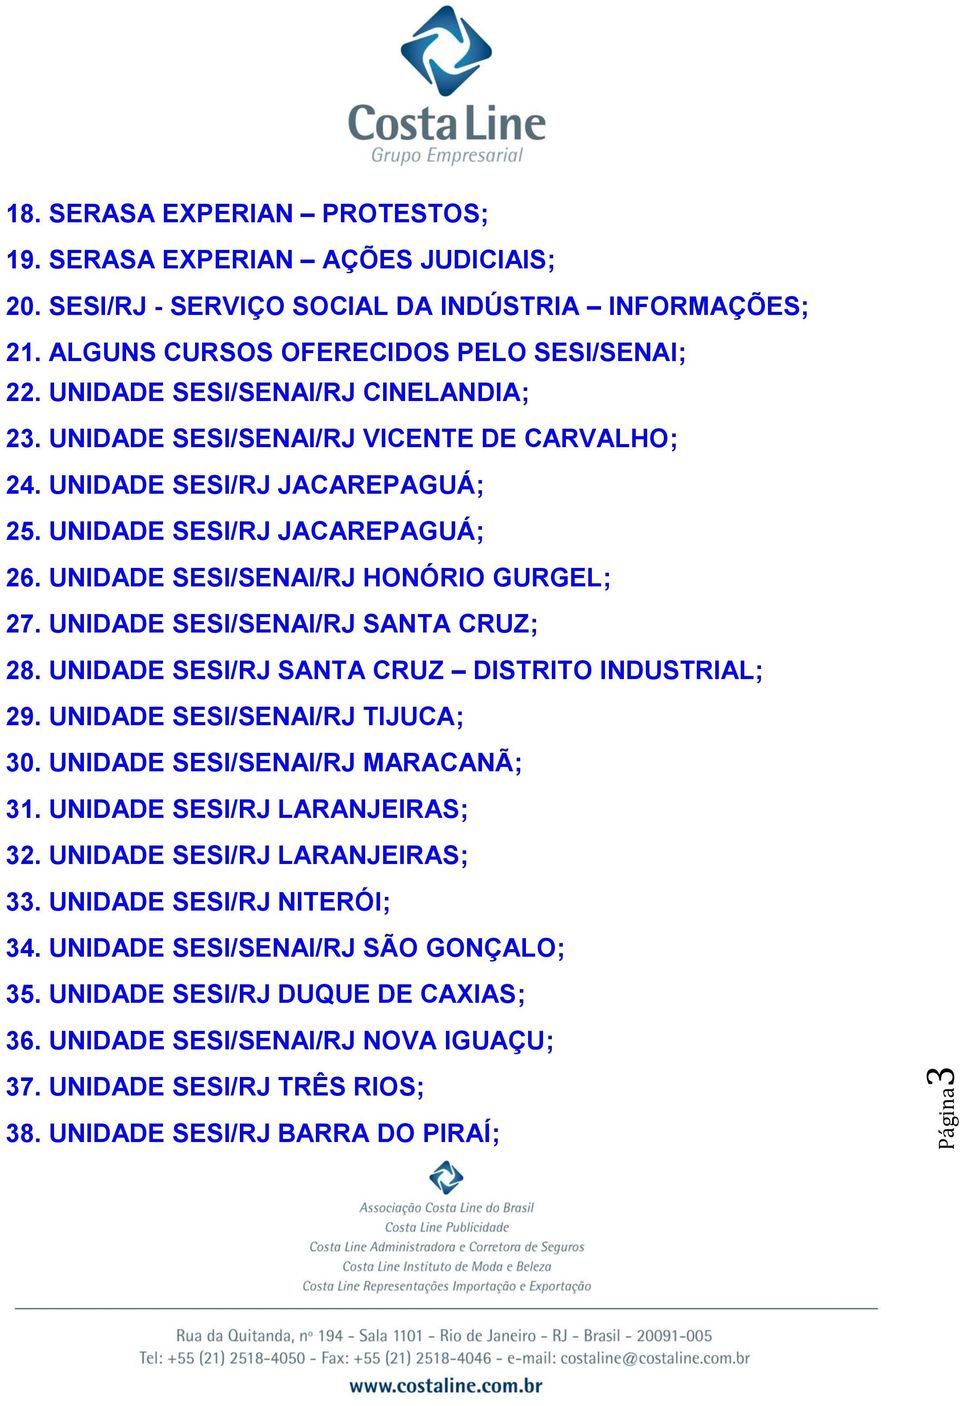 UNIDADE SESI/SENAI/RJ SANTA CRUZ; 28. UNIDADE SESI/RJ SANTA CRUZ DISTRITO INDUSTRIAL; 29. UNIDADE SESI/SENAI/RJ TIJUCA; 30. UNIDADE SESI/SENAI/RJ MARACANÃ; 31. UNIDADE SESI/RJ LARANJEIRAS; 32.